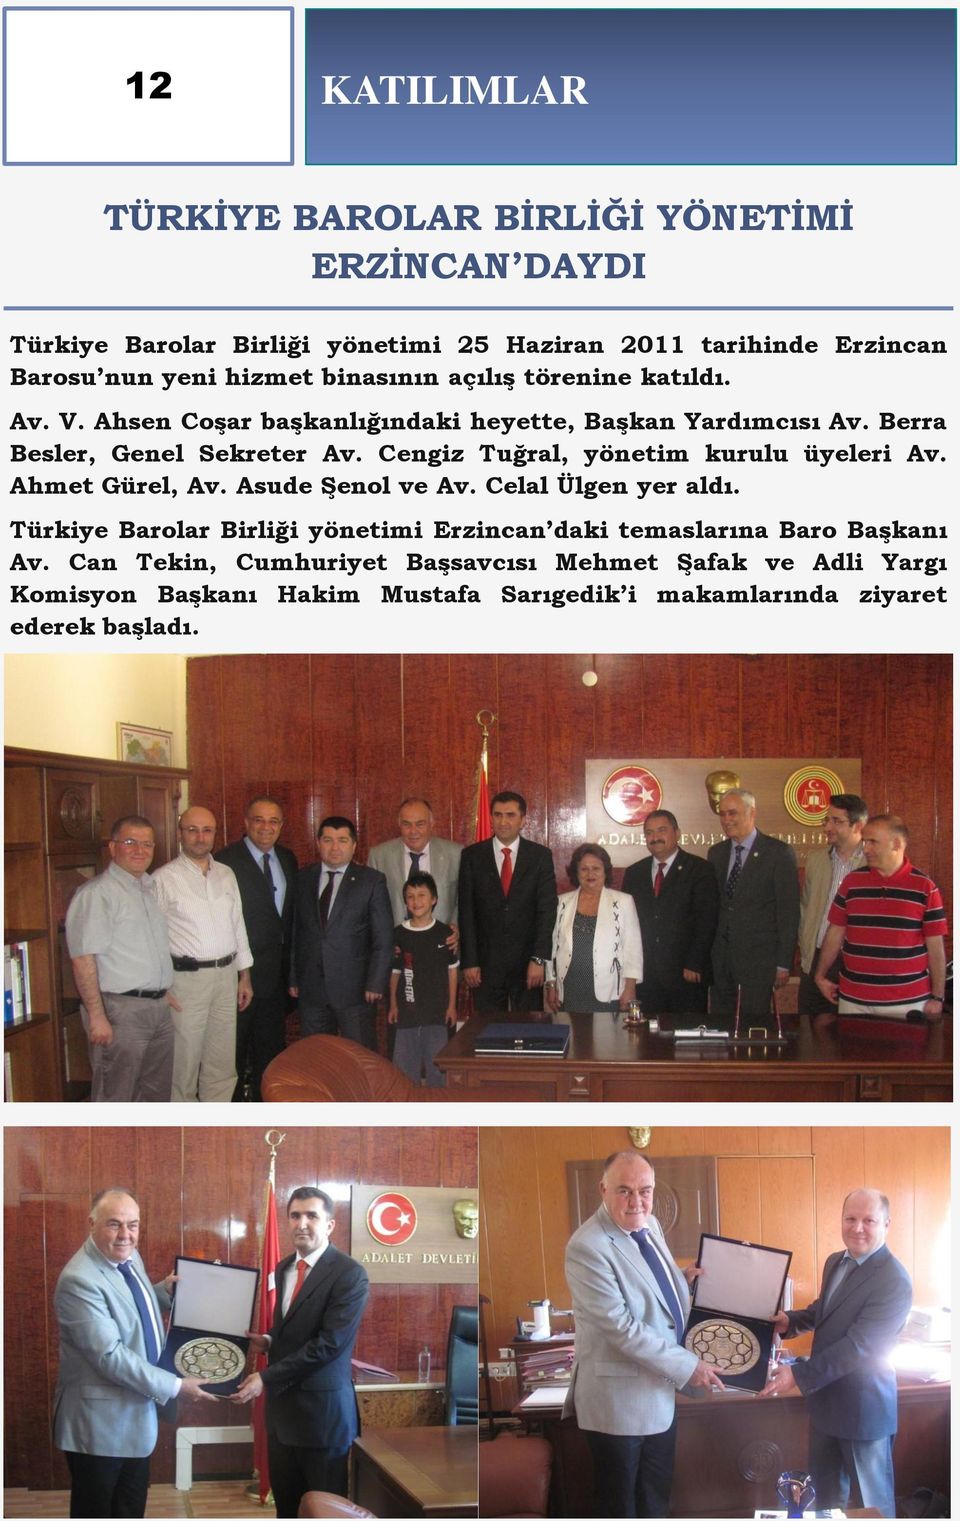 Cengiz Tuğral, yönetim kurulu üyeleri Av. Ahmet Gürel, Av. Asude ġenol ve Av. Celal Ülgen yer aldı.